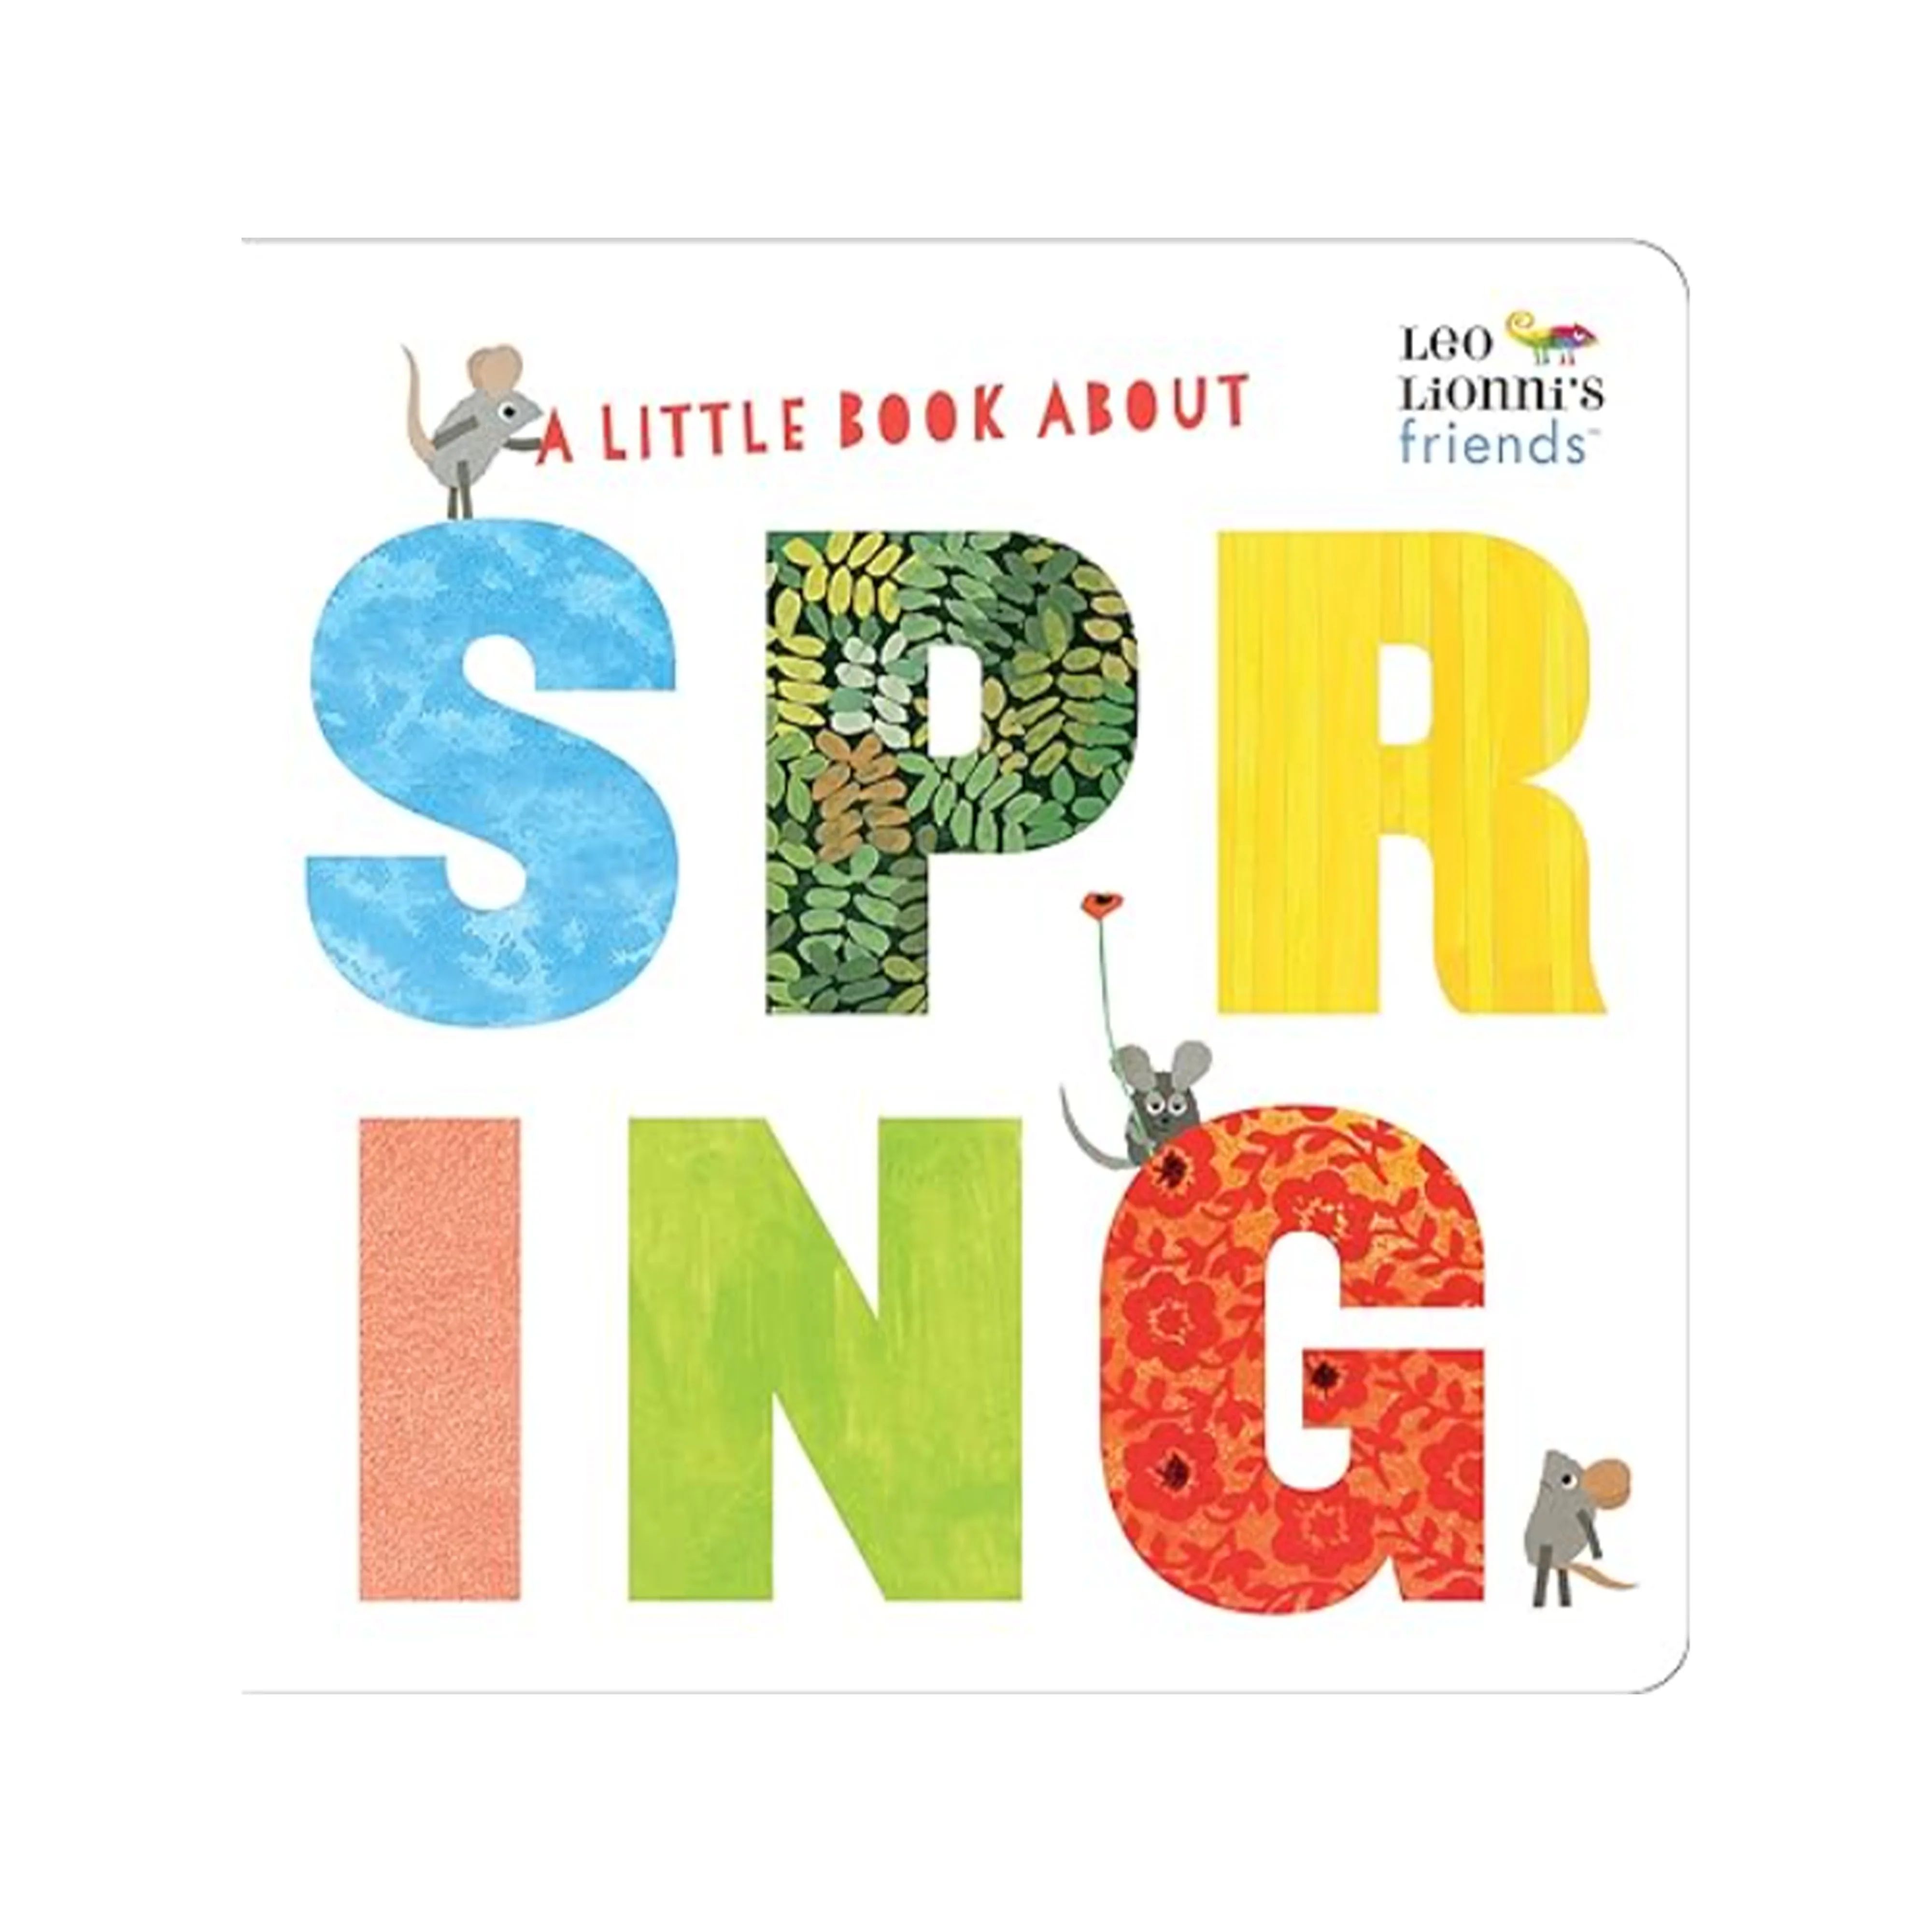 A Little Book About Spring - L. Lionni | The Beaufort Bonnet Company